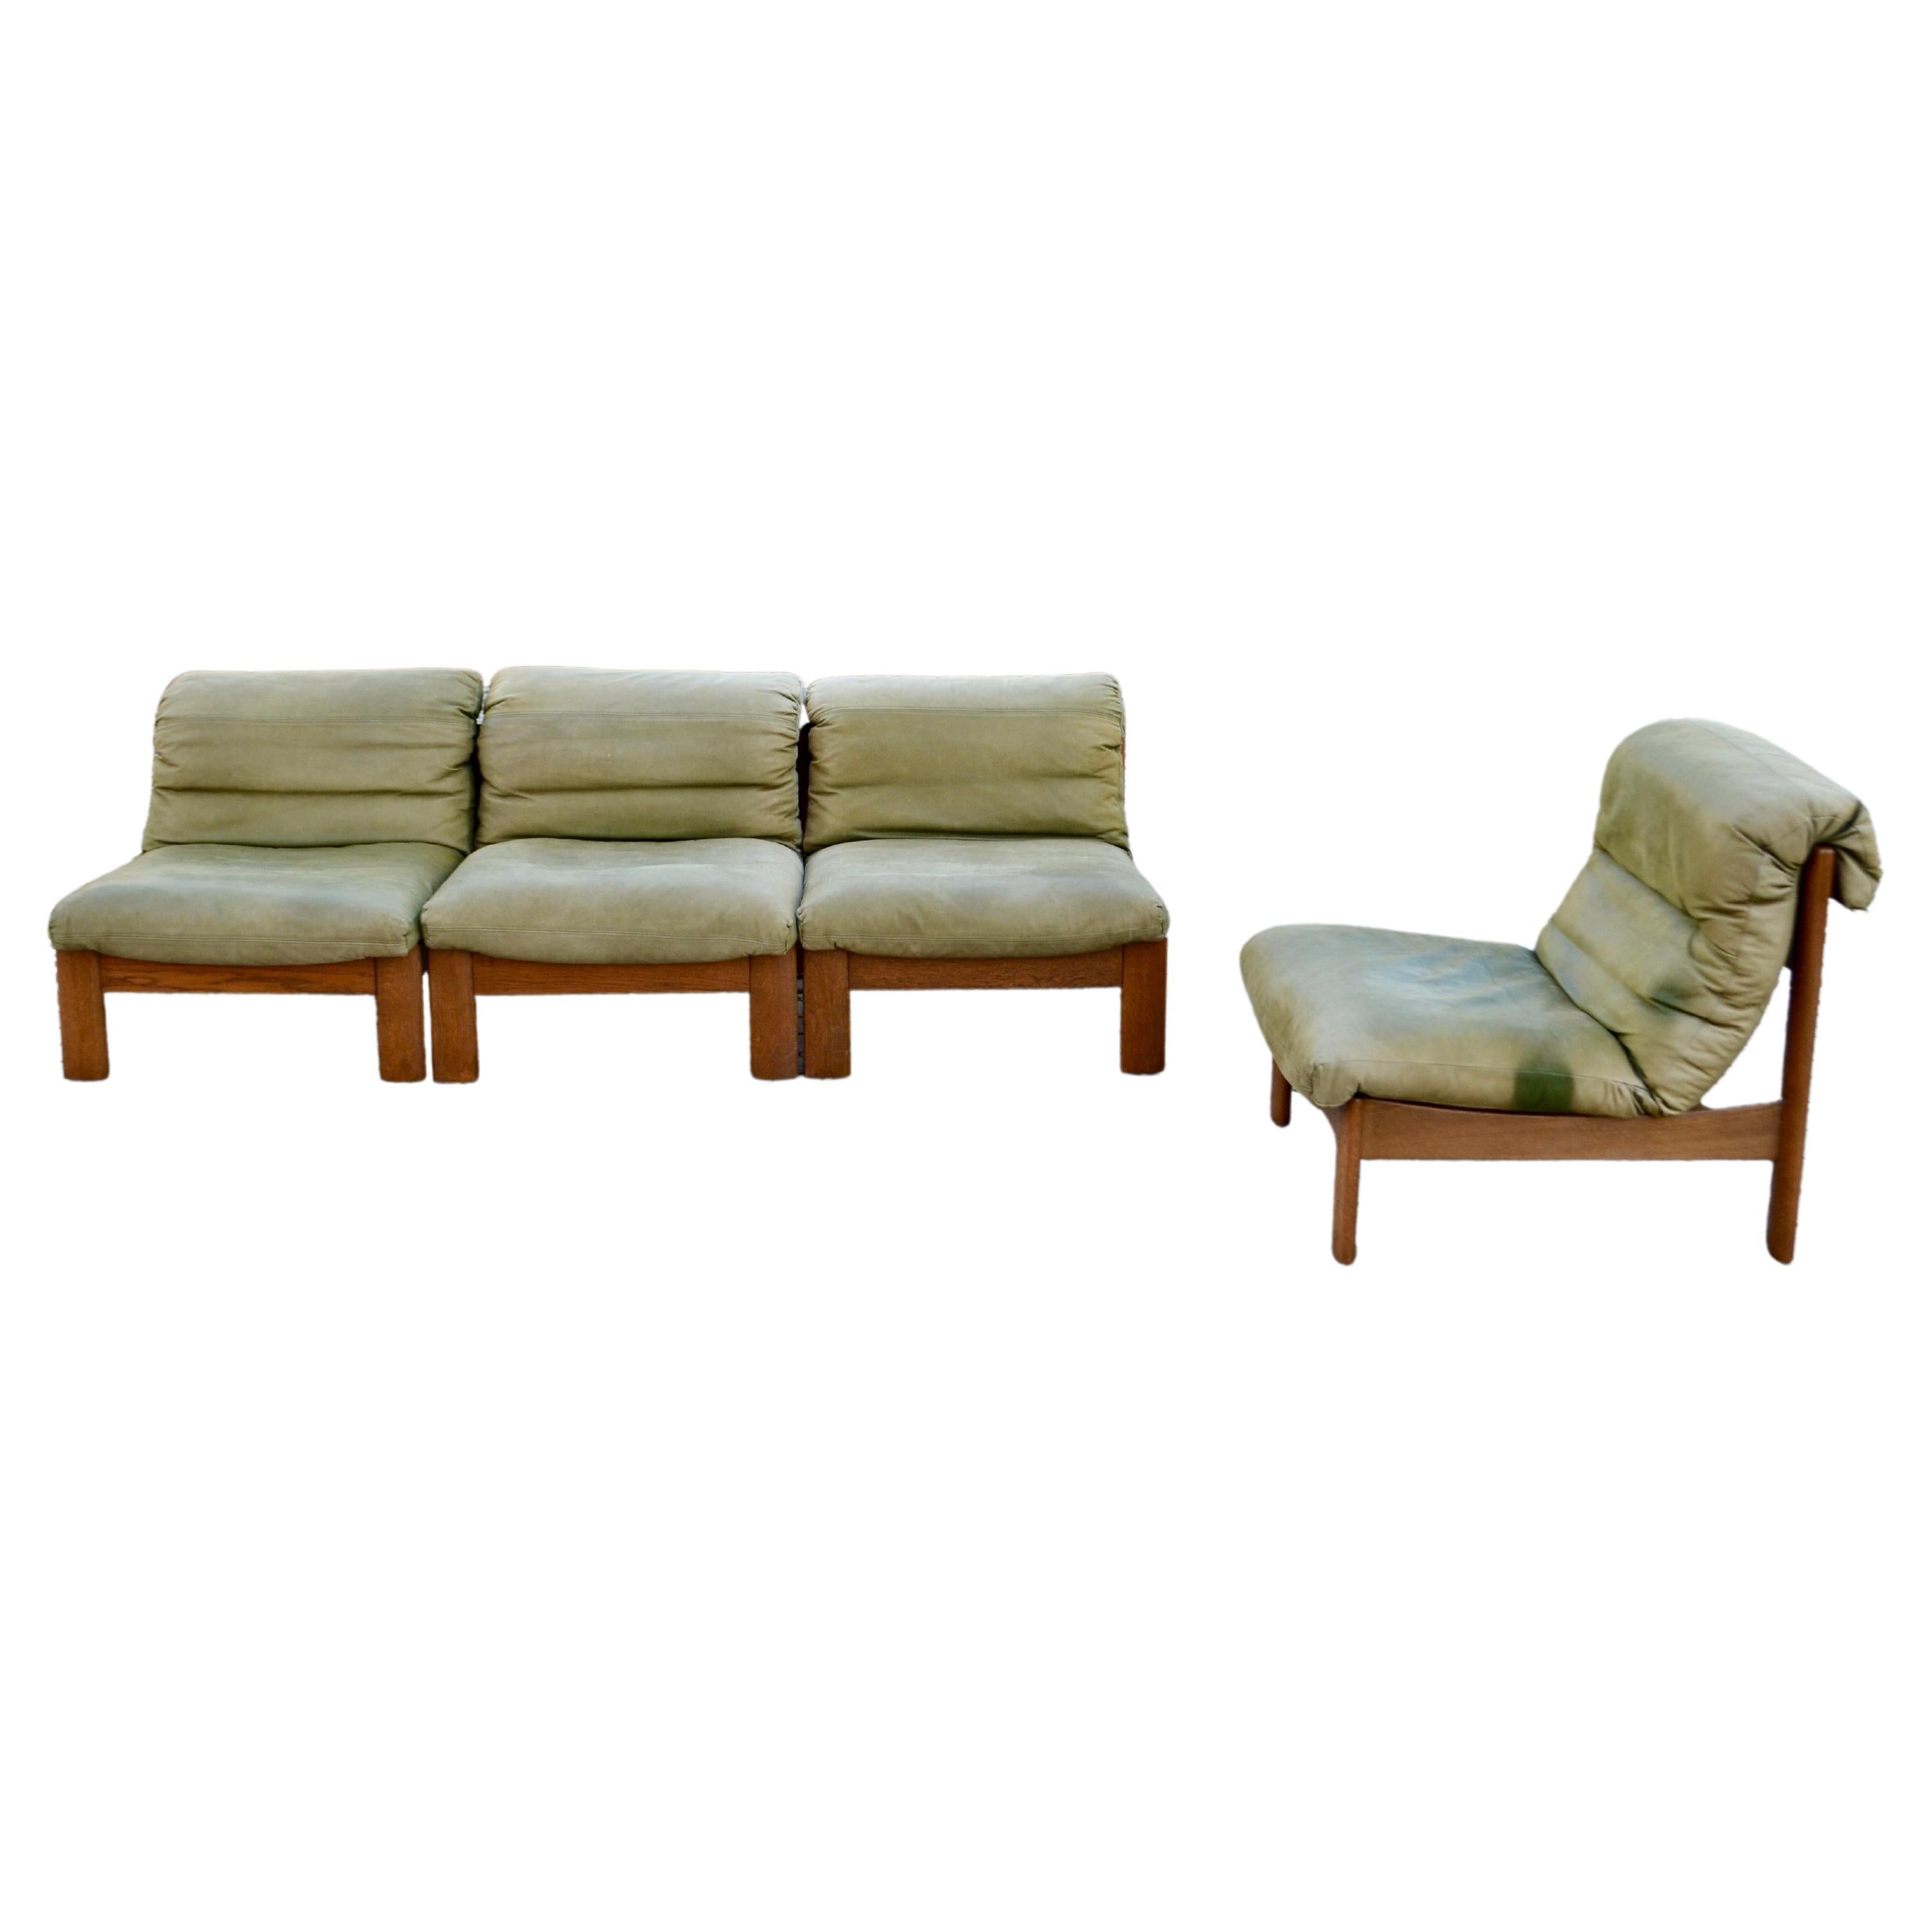 Diese 4 atemberaubenden Modular Sektional Leder Stühle / Sofa wurde von Deutschland von Rolf Benz hergestellt.
Es ist ein reines 70er-Jahre-Design mit zeitlos moderner Form.
Das Leder hat eine nubuk-anilingrüne Farbe und einen weichen